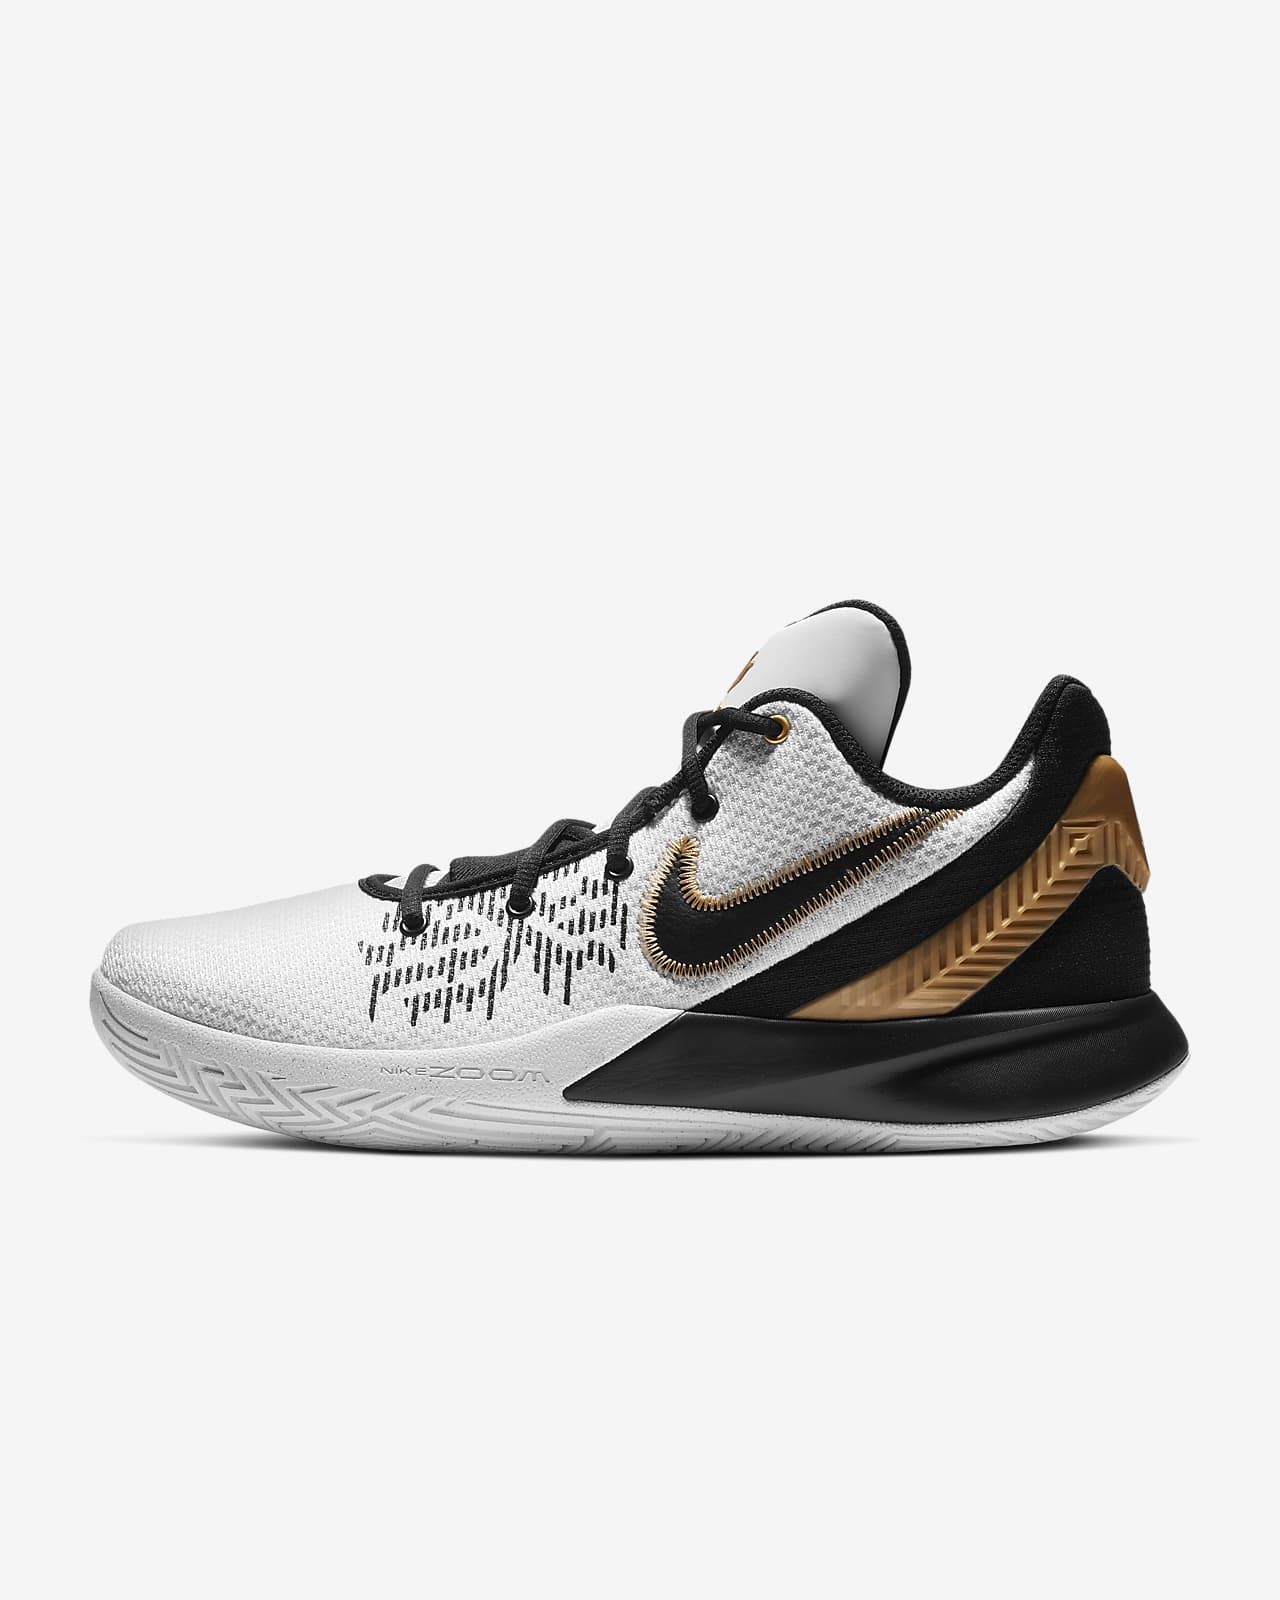 Kyrie Flytrap II Basketball Shoe. Nike MY